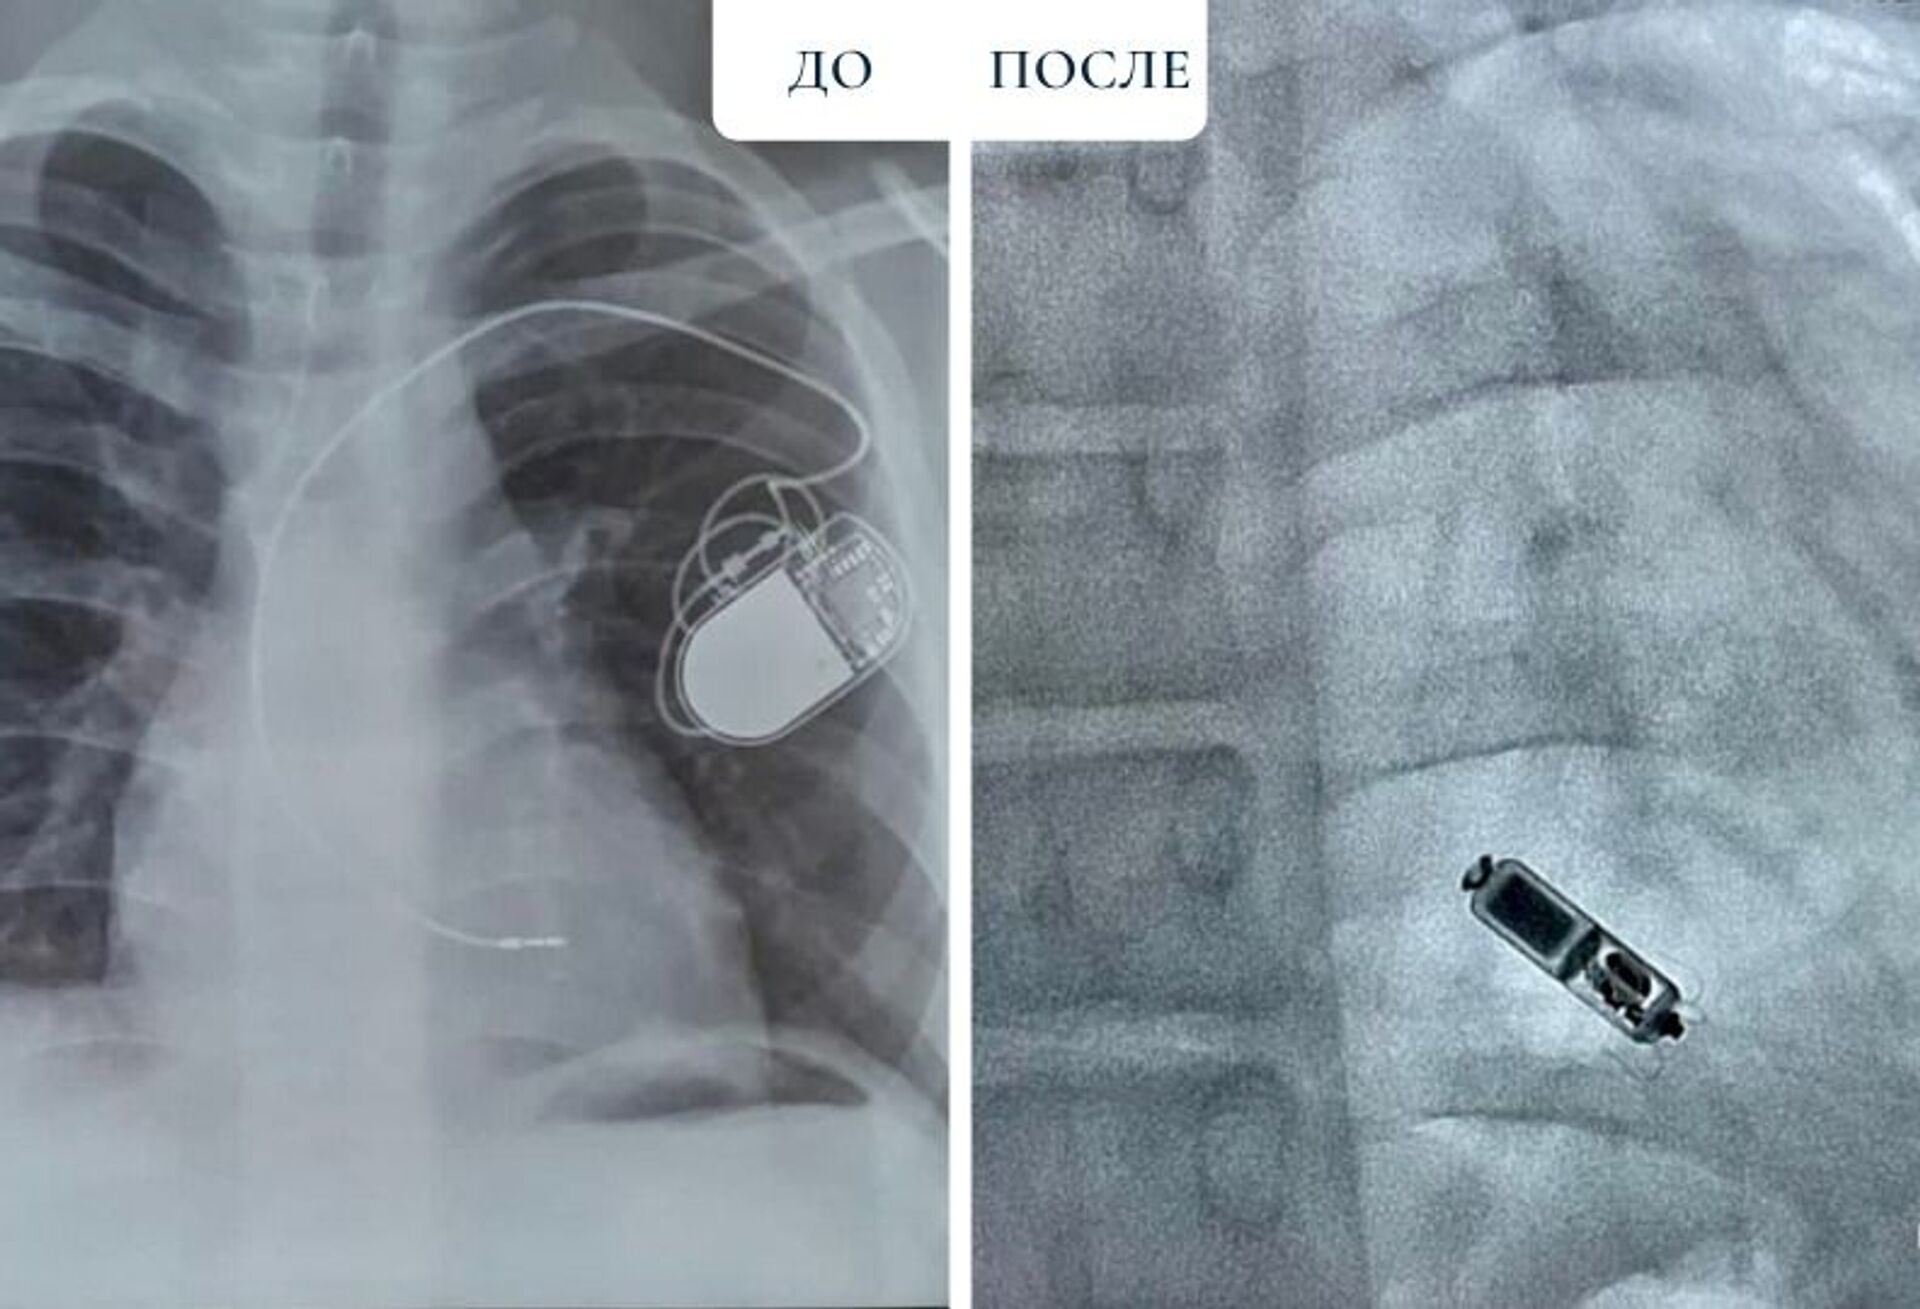 Имплантация самого маленького кардиостимулятора в мире успешно прошла в Нур-Султане - Sputnik Казахстан, 1920, 17.08.2021